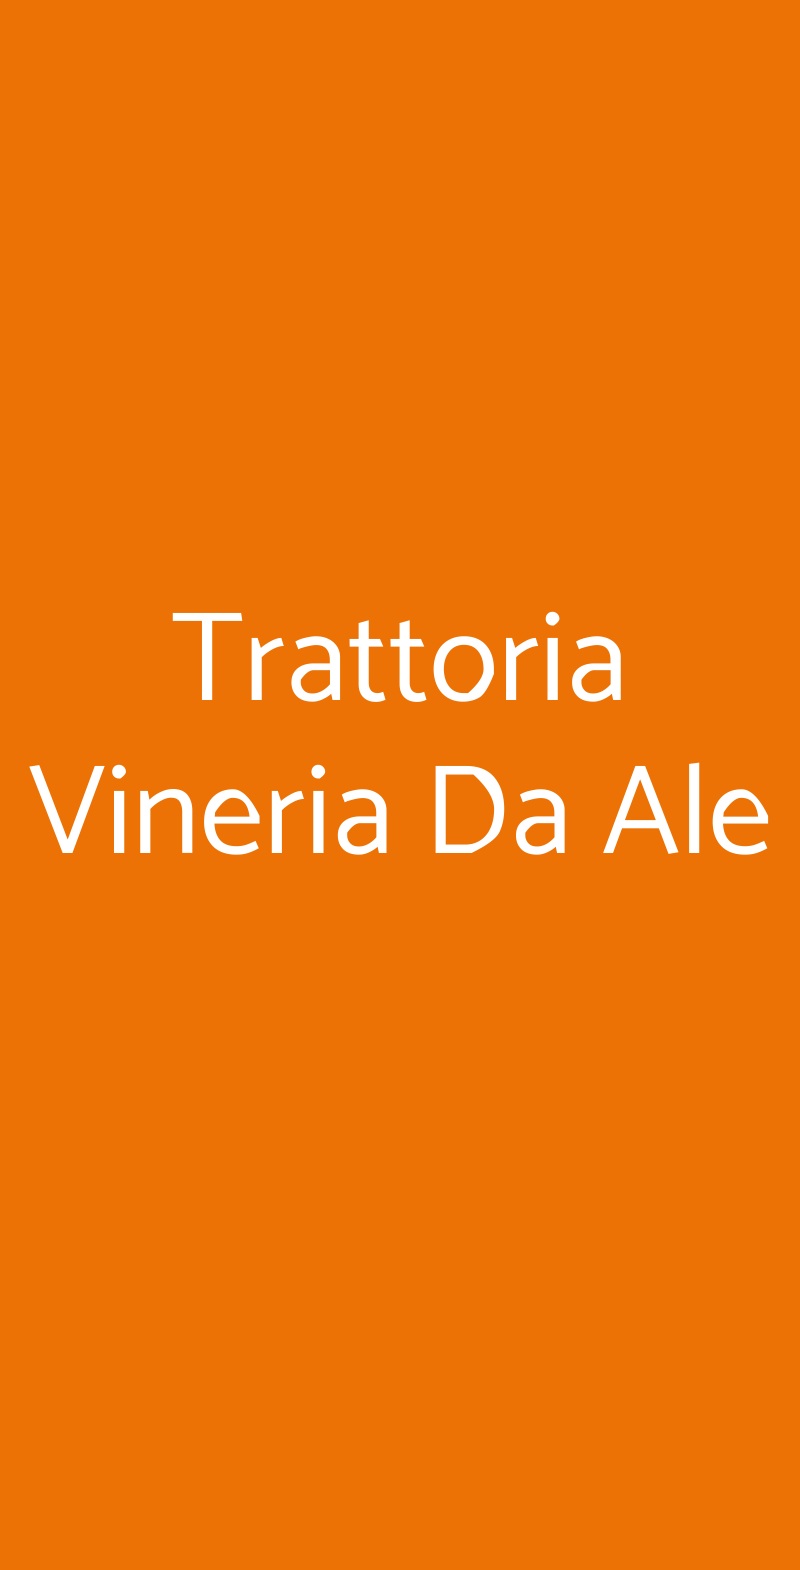 Trattoria Vineria Da Ale Torino menù 1 pagina